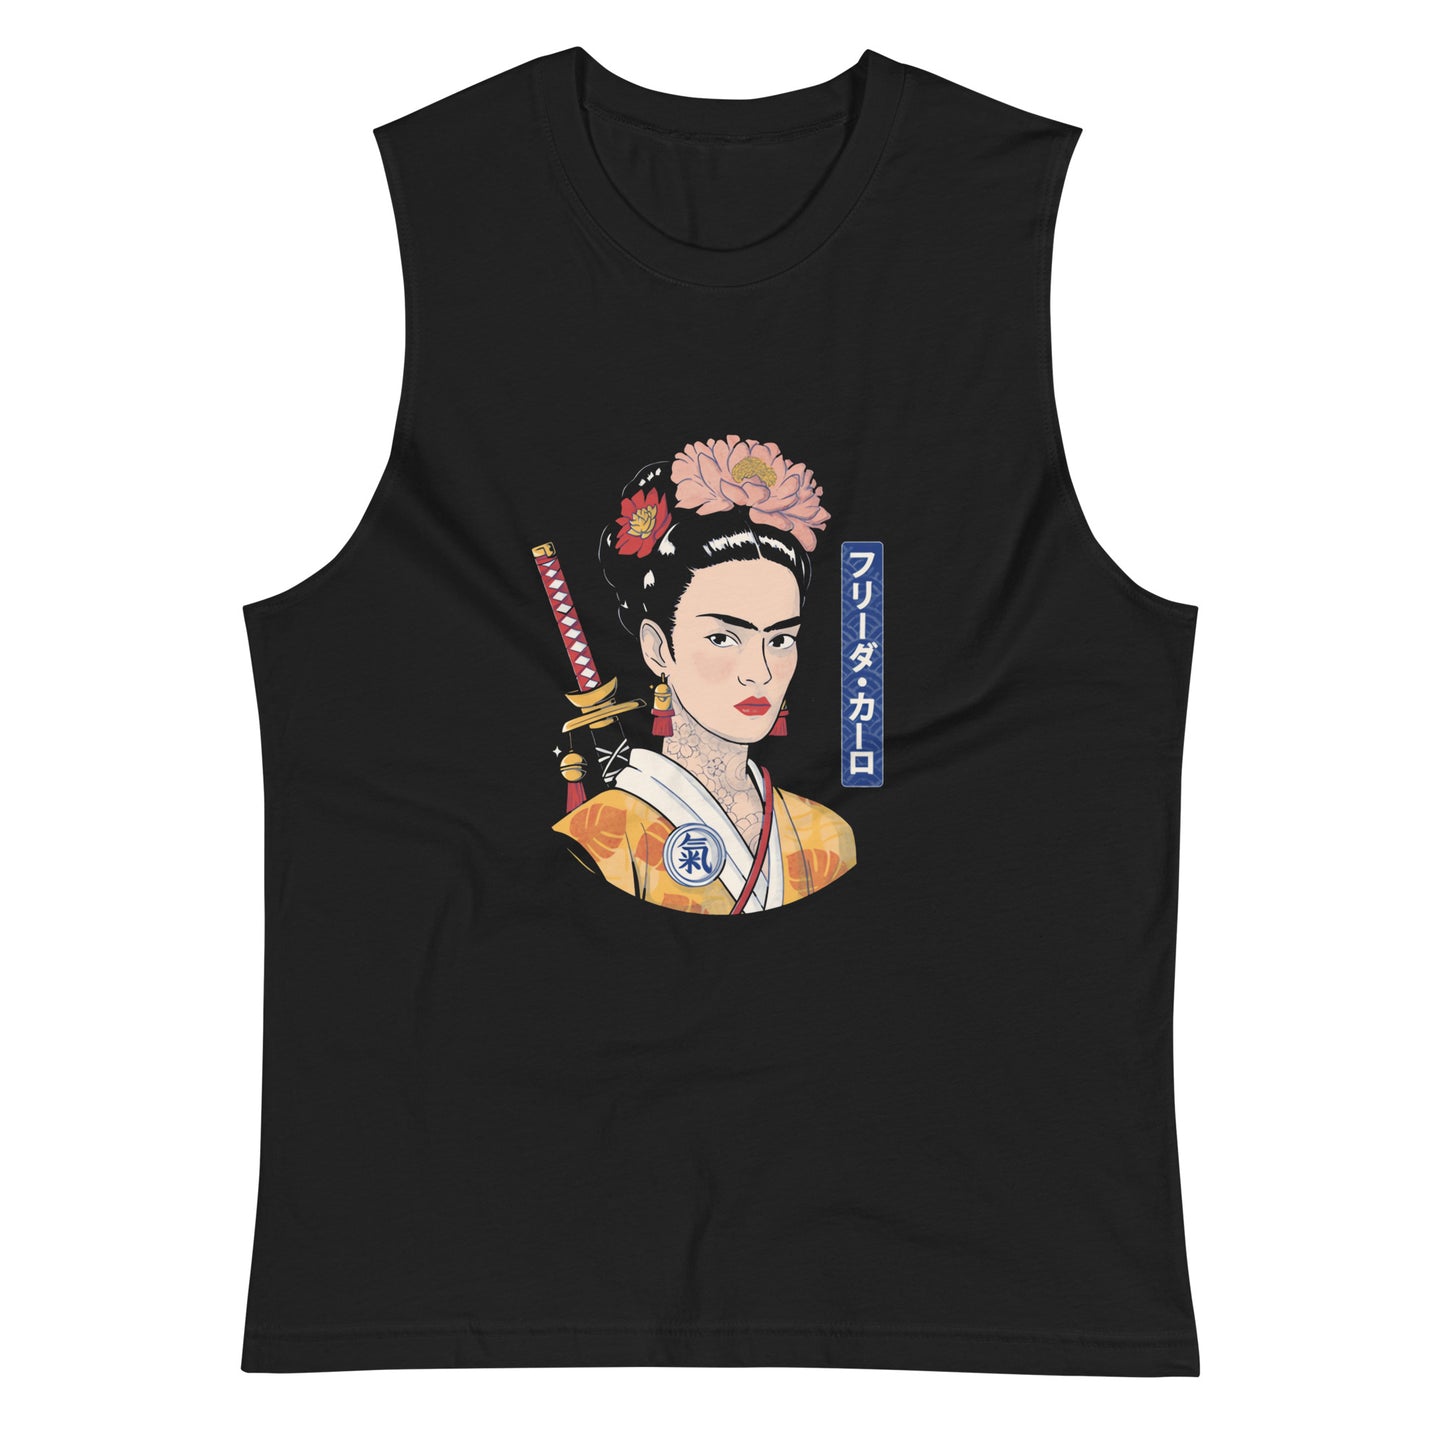 Playera sin mangas Frida Samurai ,Descubre calidad excepcional y estampados duraderos. Encuentra estilo y orgullo en cada prenda.